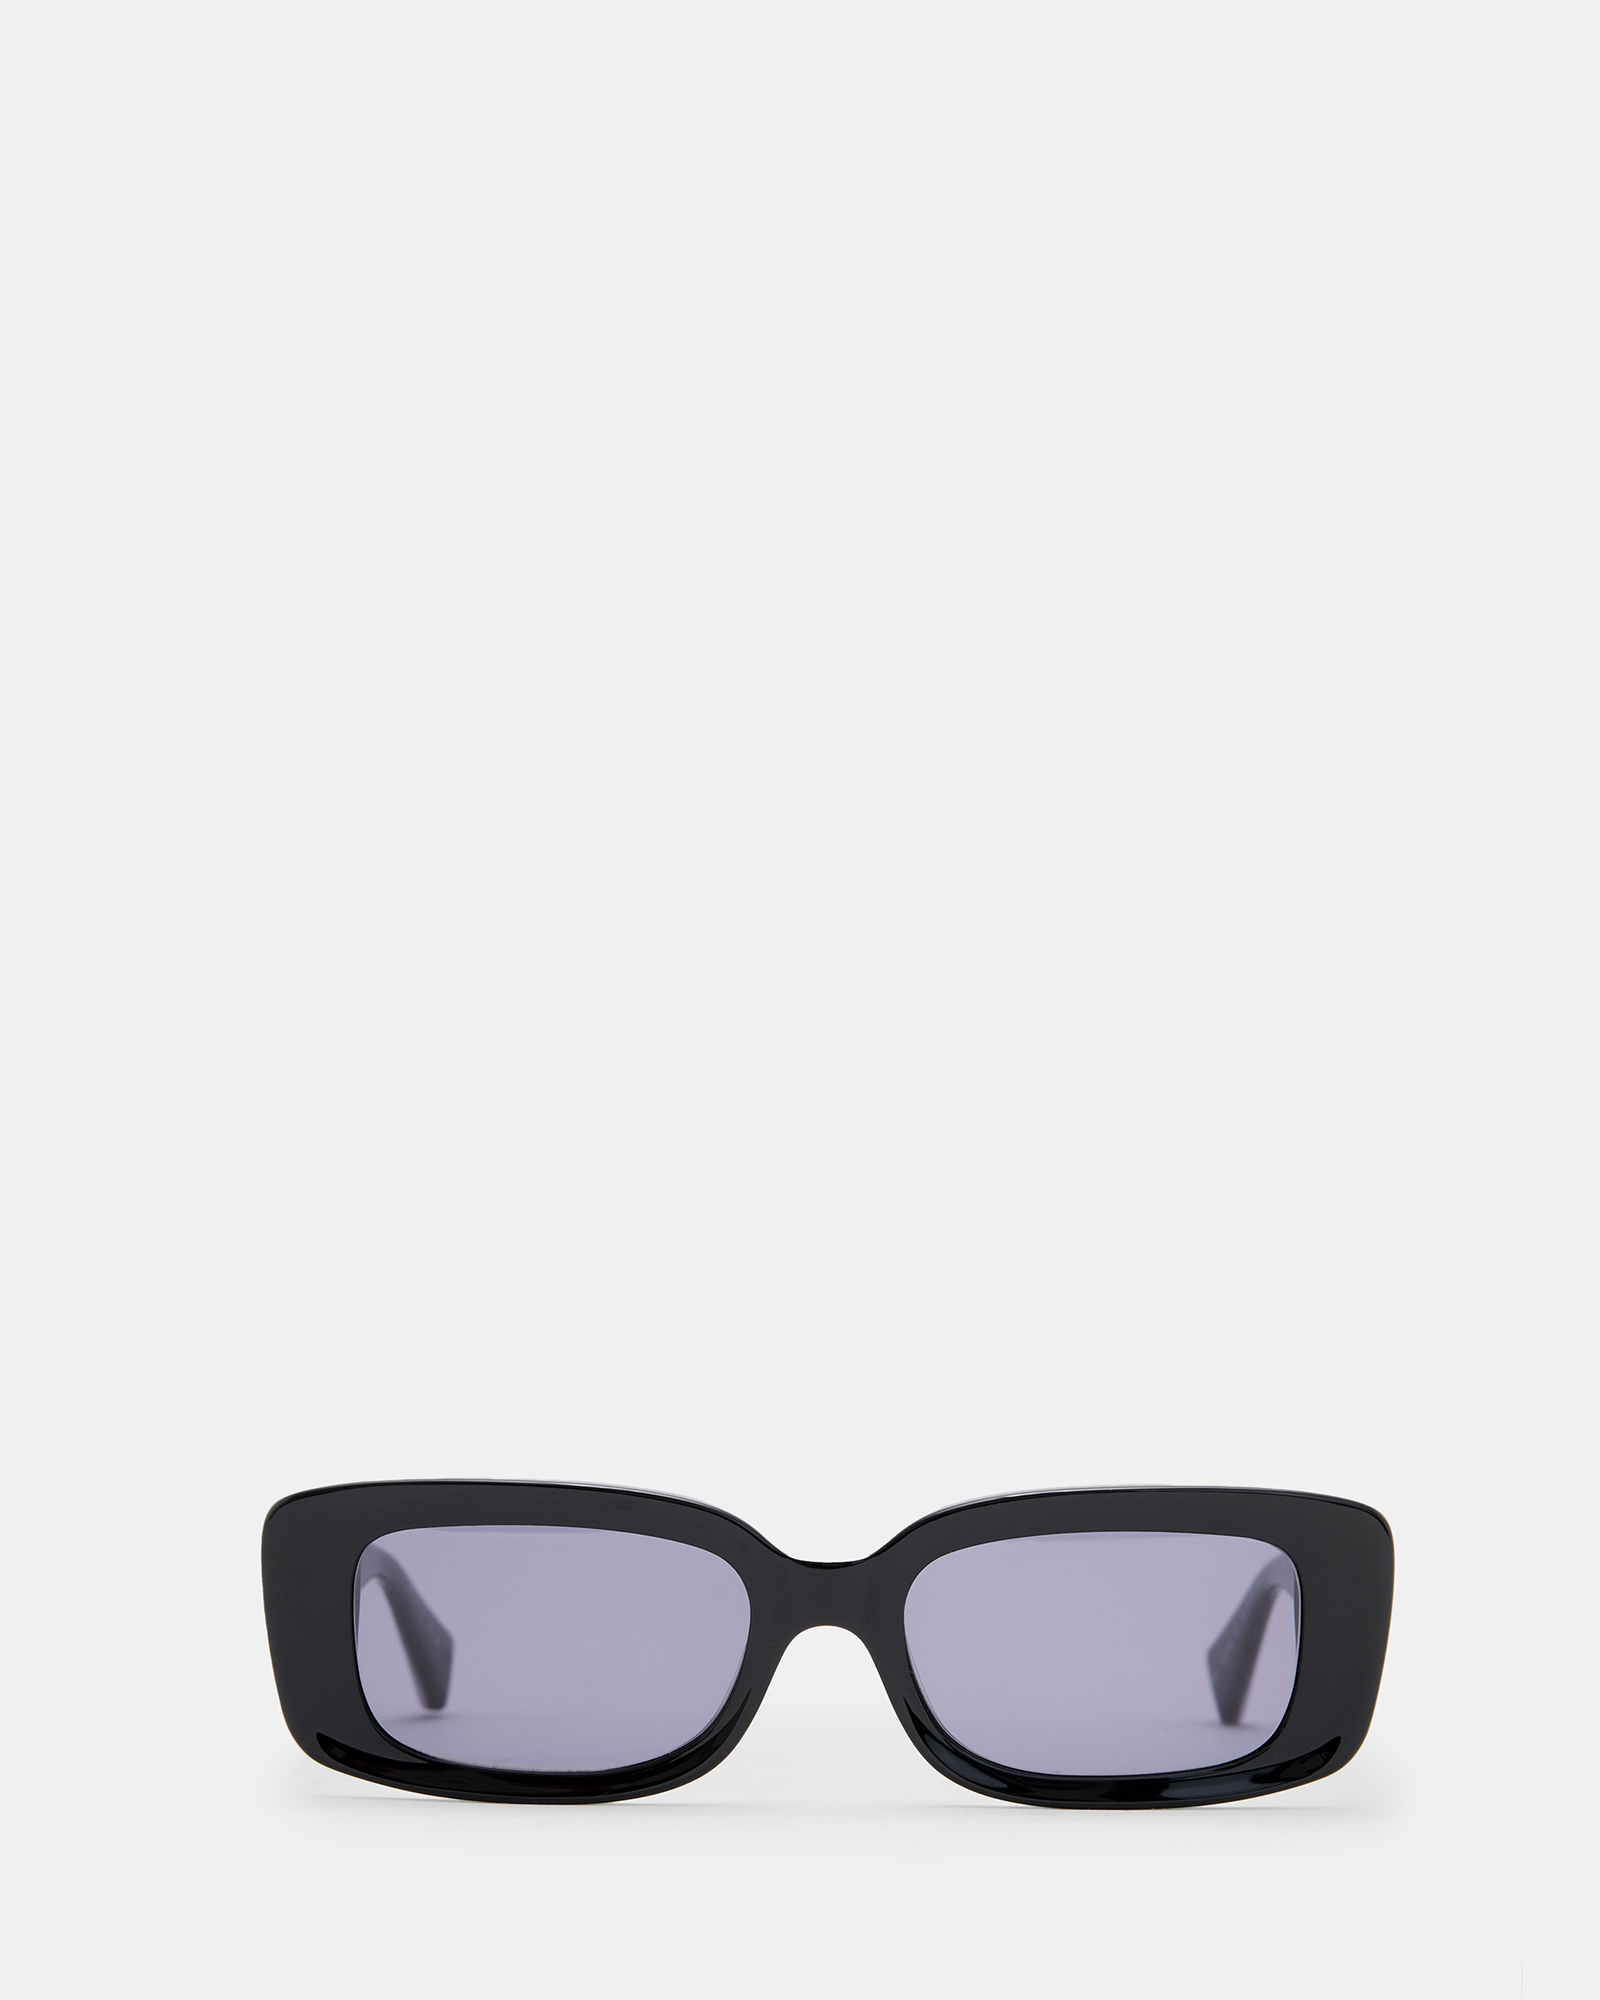 AllSaints Sonic Rectangular Sunglasses,, GLOSS BLACK